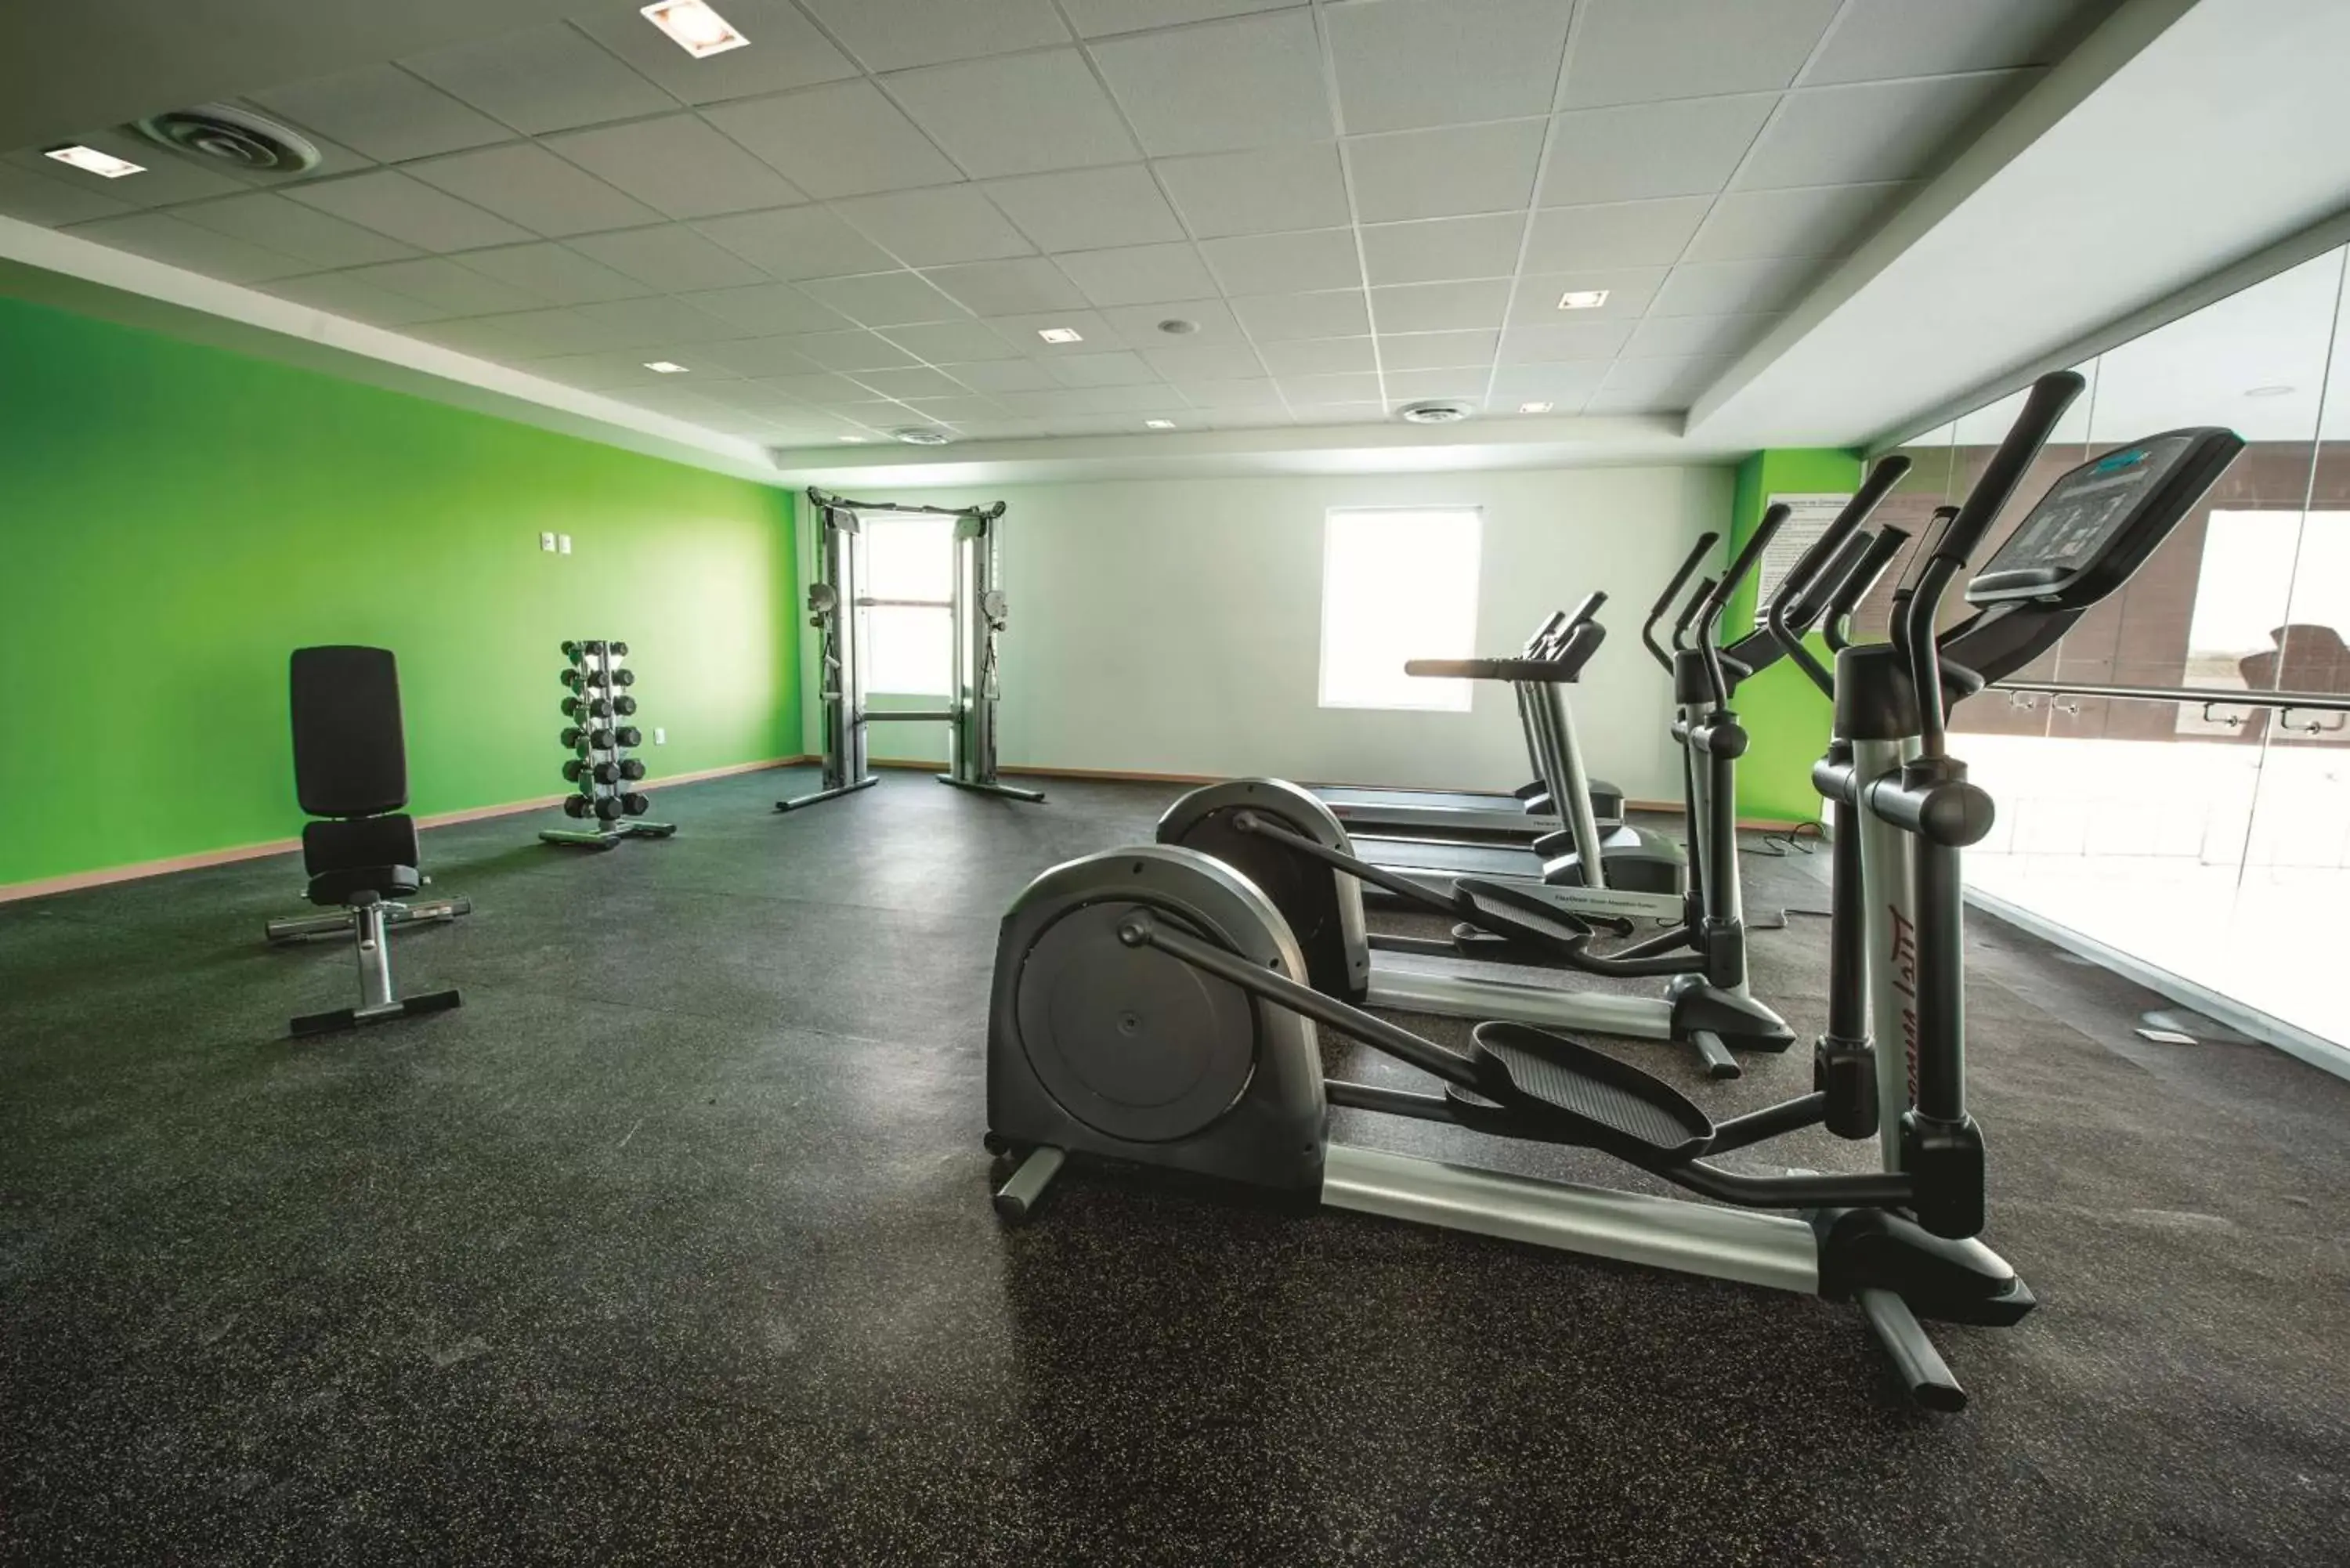 Fitness centre/facilities, Fitness Center/Facilities in La Quinta by Wyndham San Jose Chiapa Puebla